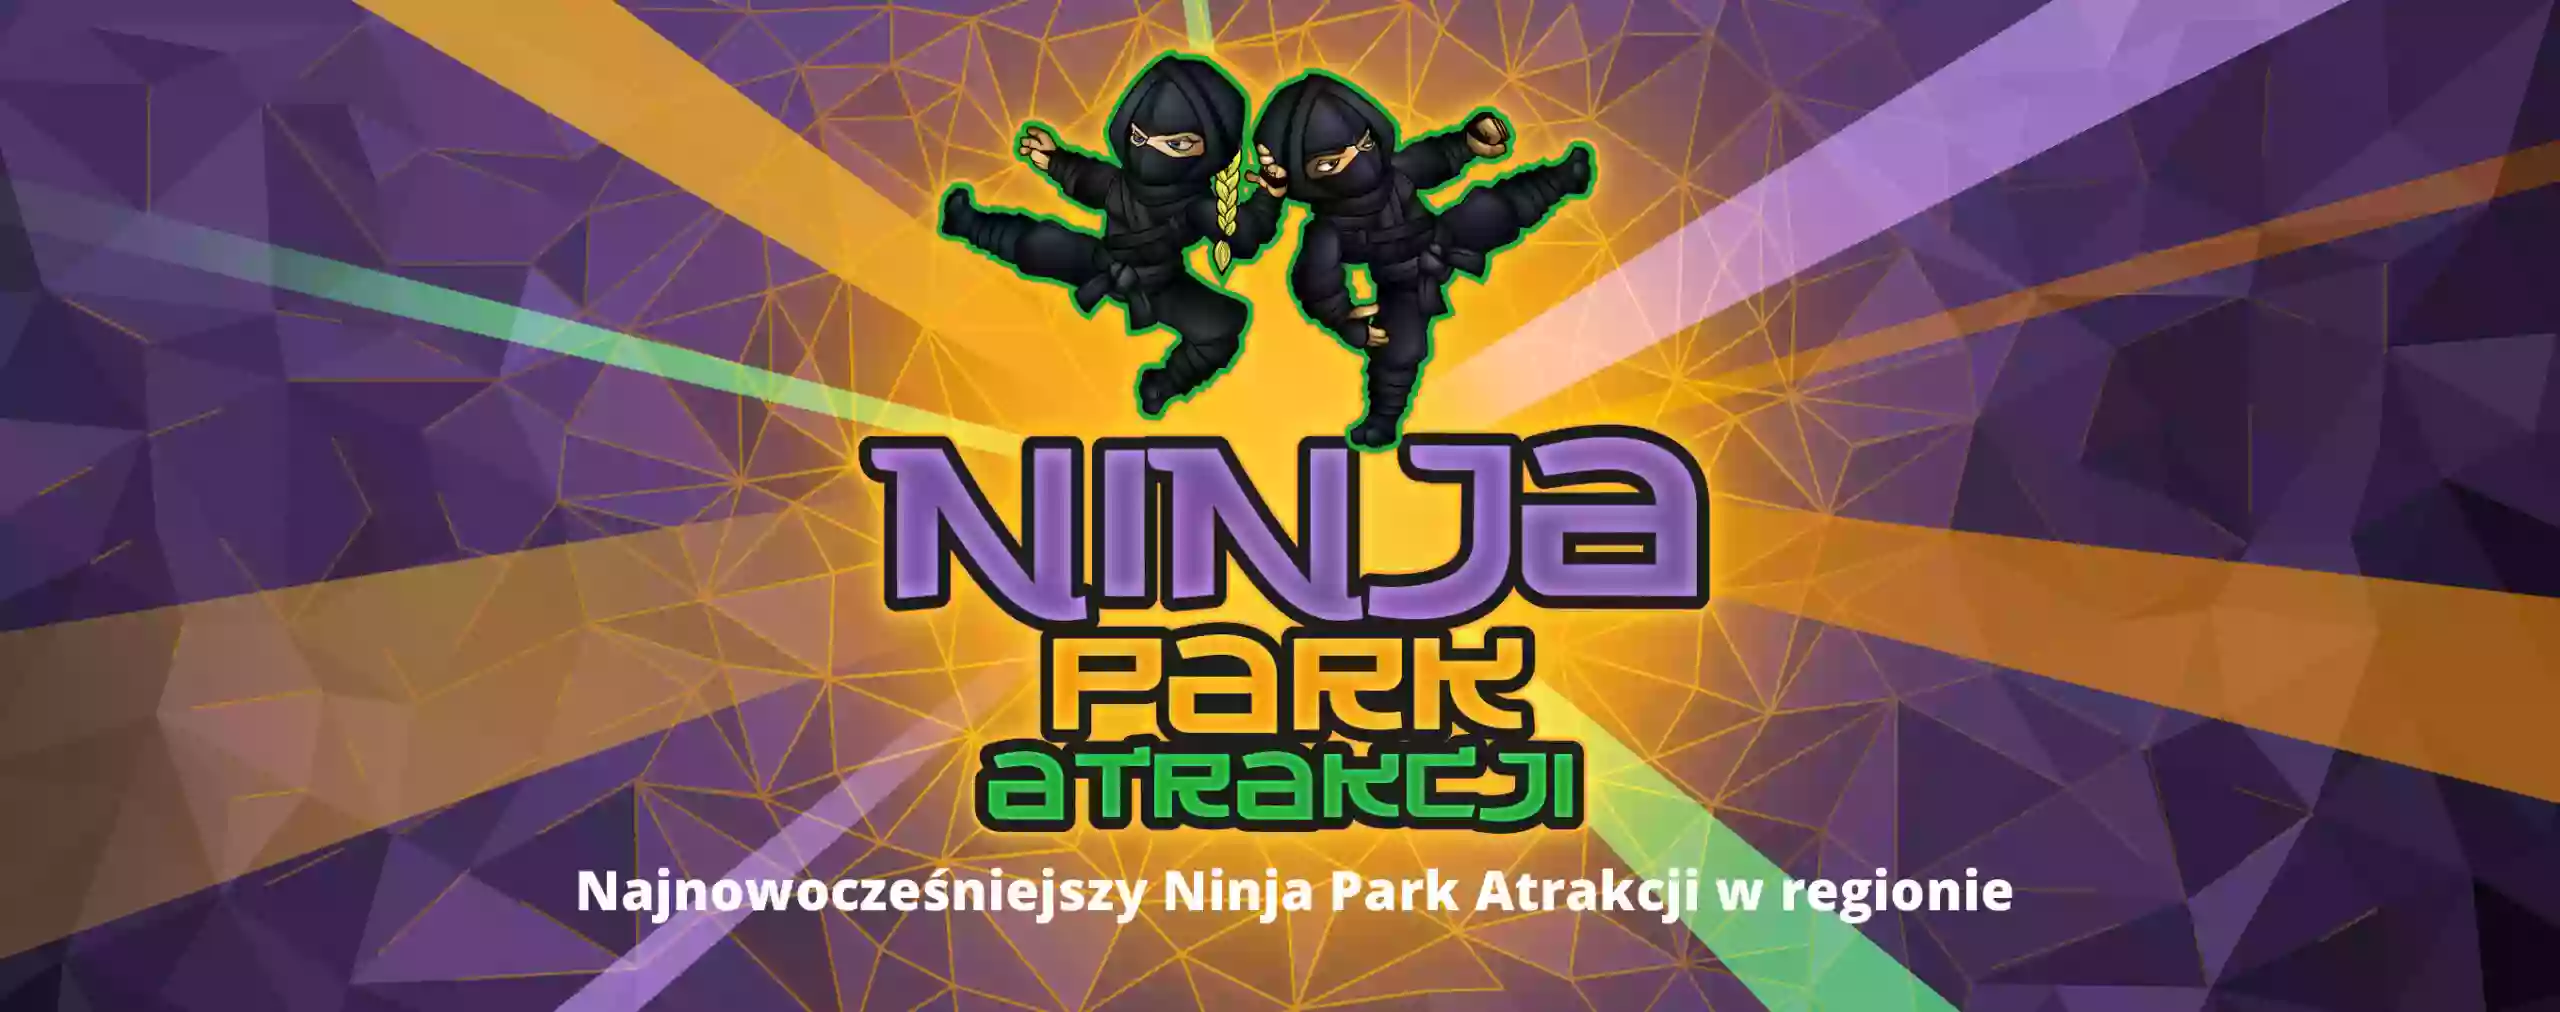 Ninja Park Atrakcji Sosnowiec